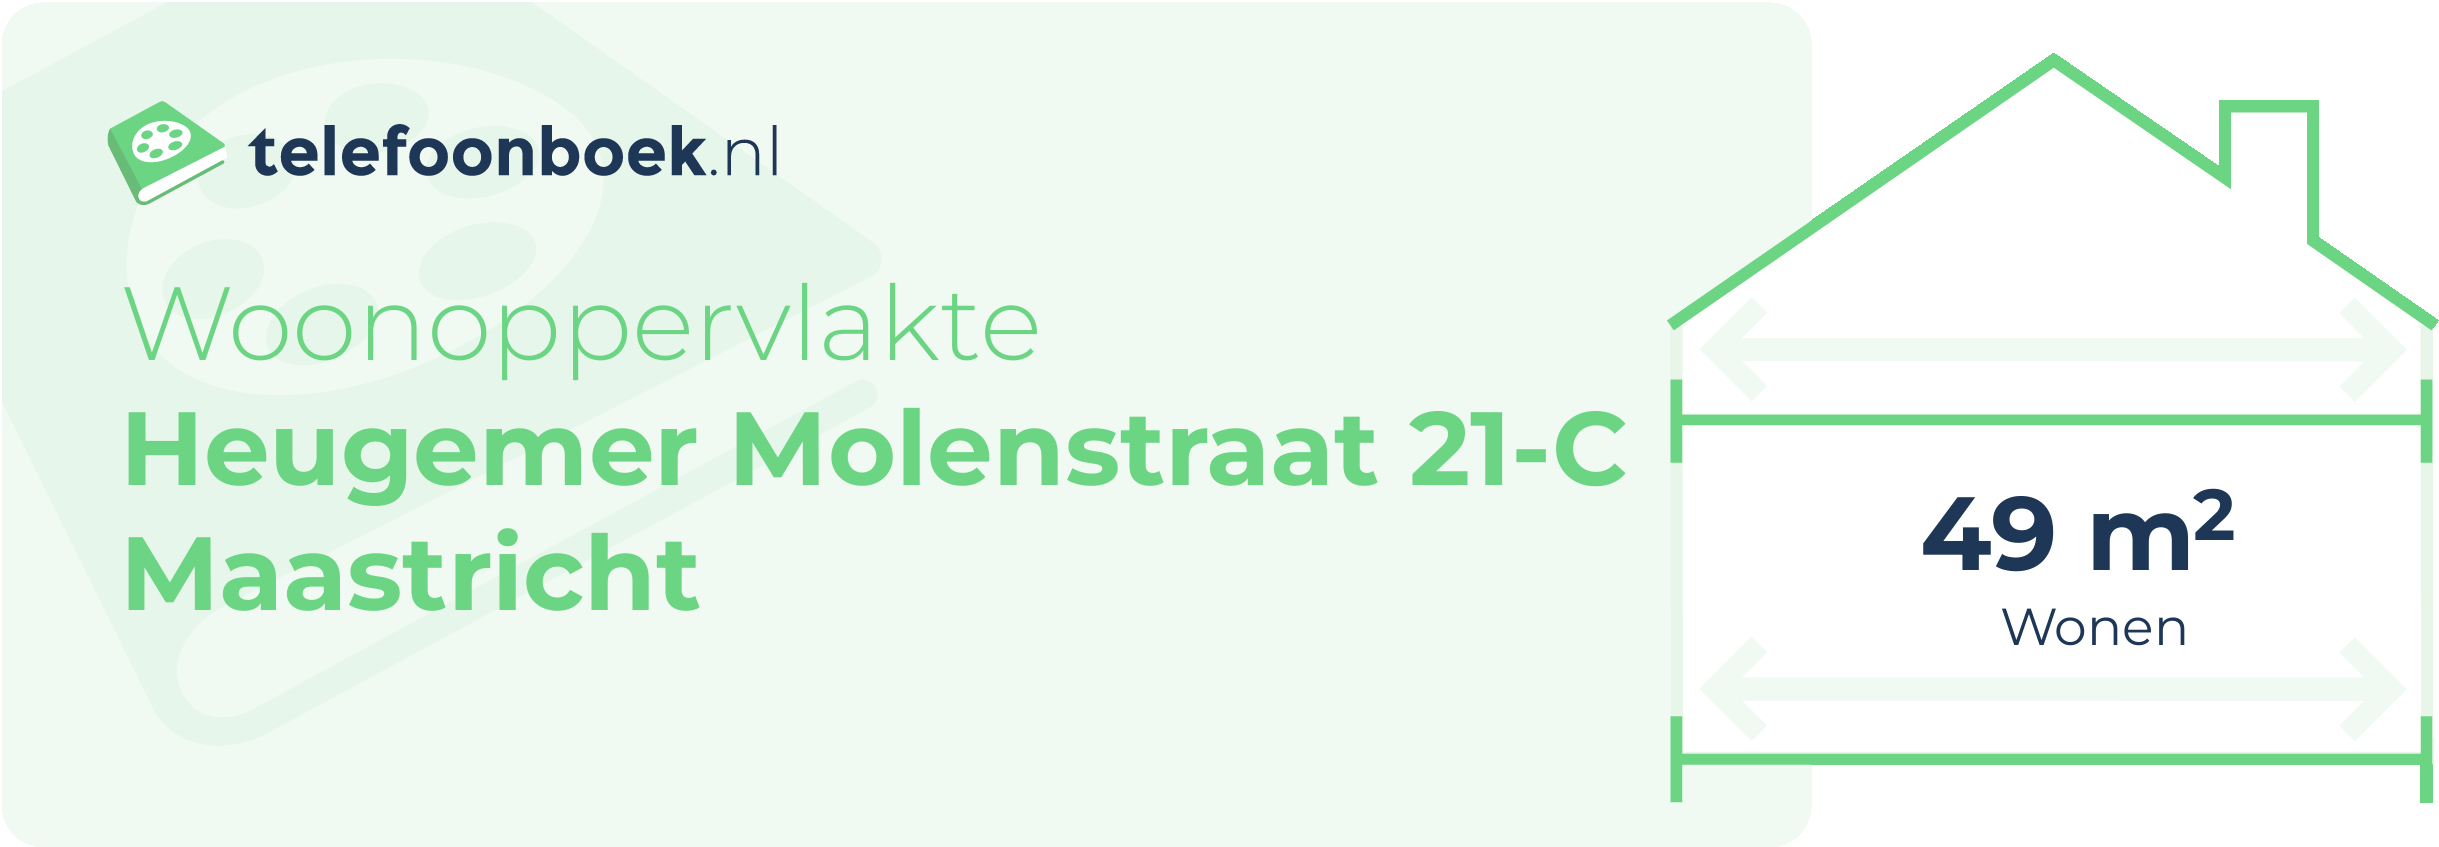 Woonoppervlakte Heugemer Molenstraat 21-C Maastricht